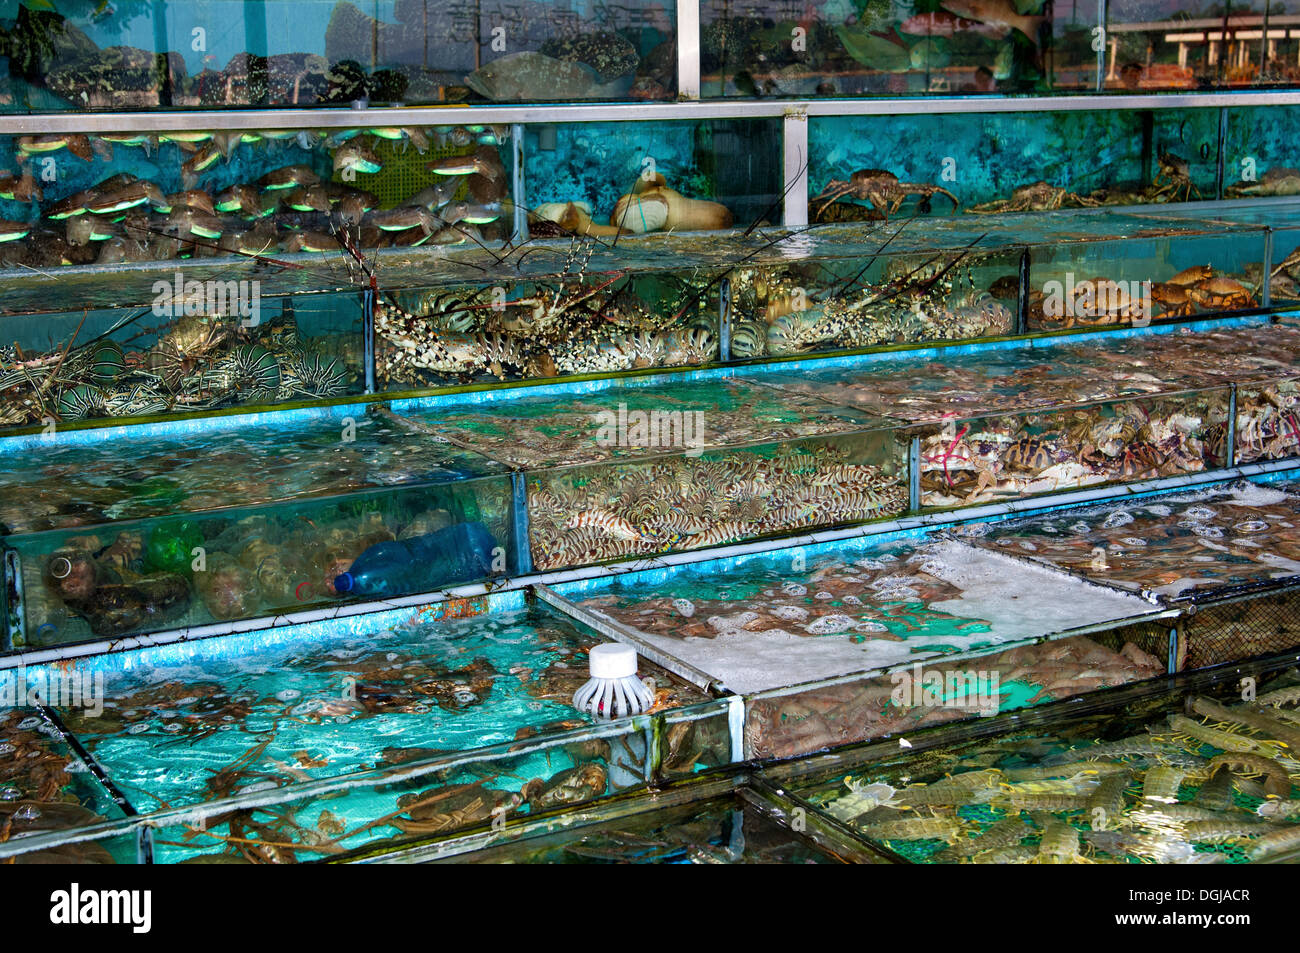 Glass tanks in a restaurant with fish and seafood, Sai Kung, New Territories, Hong Kong, Hong Kong, China Stock Photo